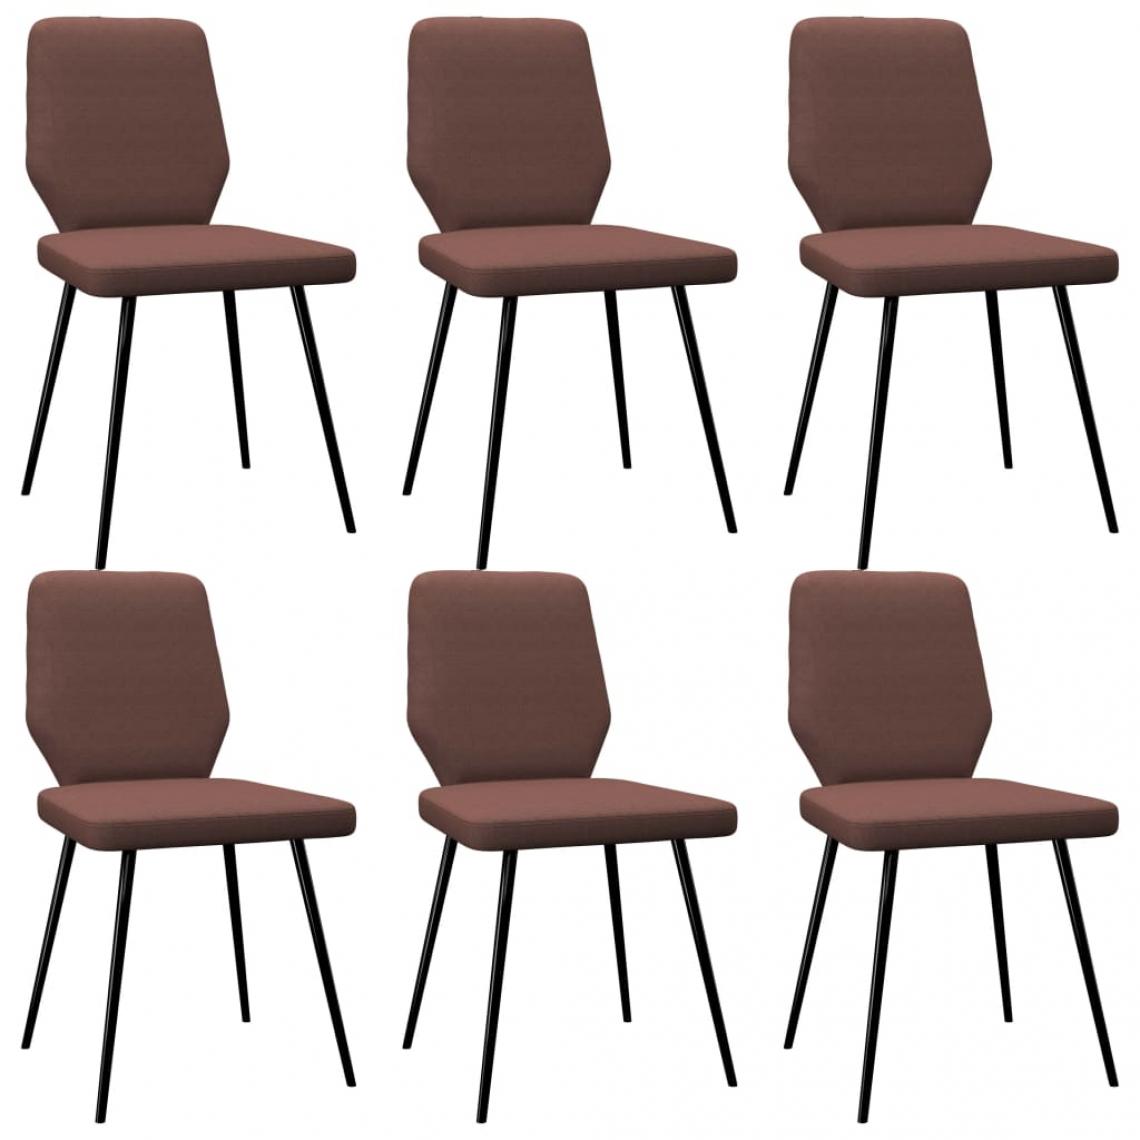 Decoshop26 - Lot de 6 chaises de salle à manger cuisine design moderne tissu marron CDS022648 - Chaises